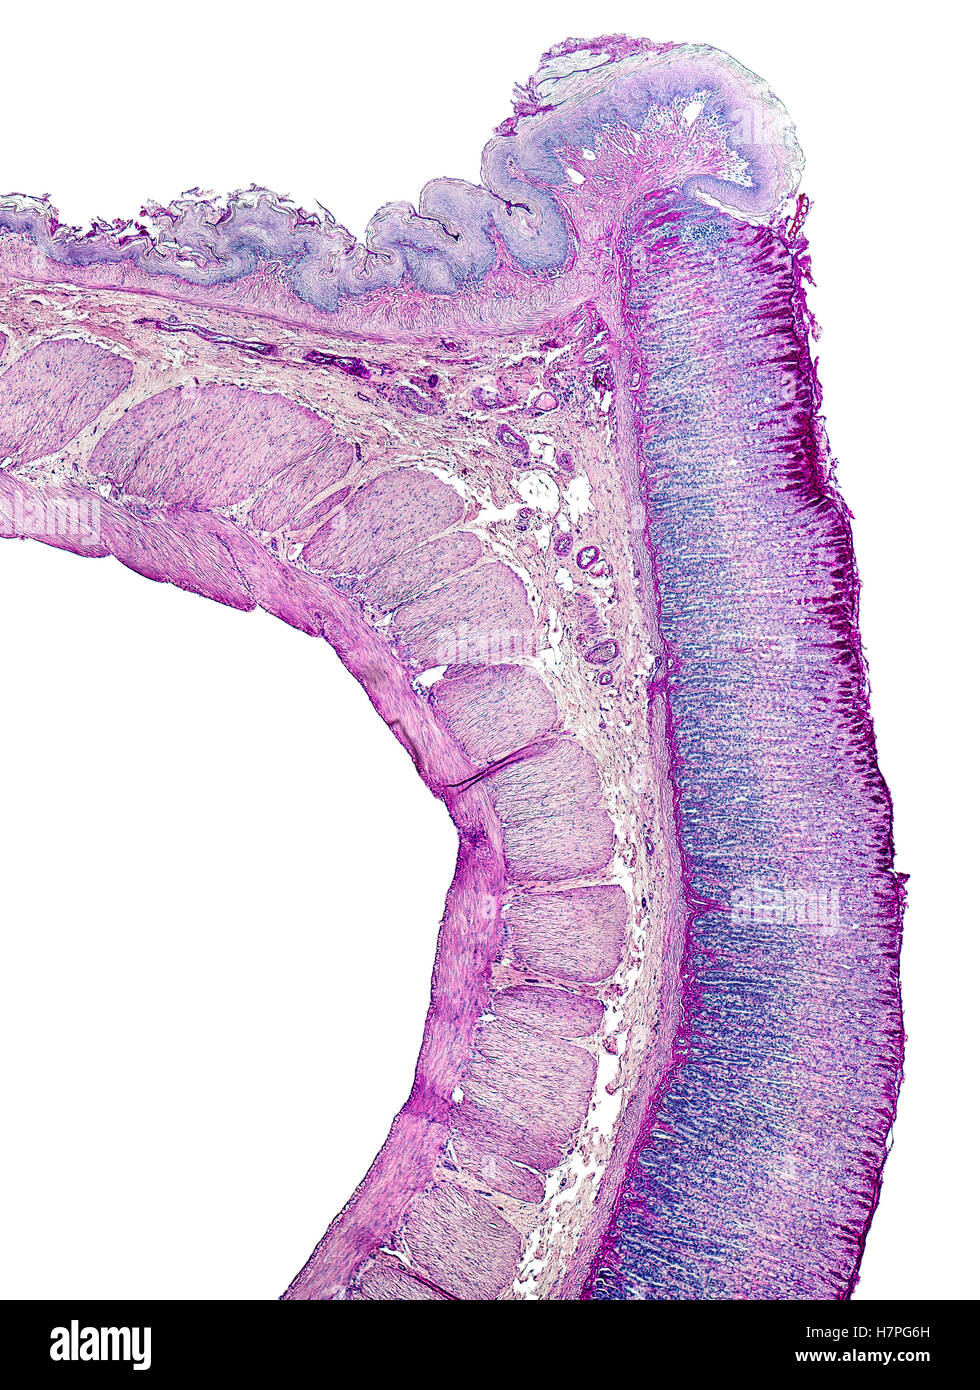 mikroskopisch kleine Querschnitt zeigt das Magen Detail einer Ratte Stockfoto